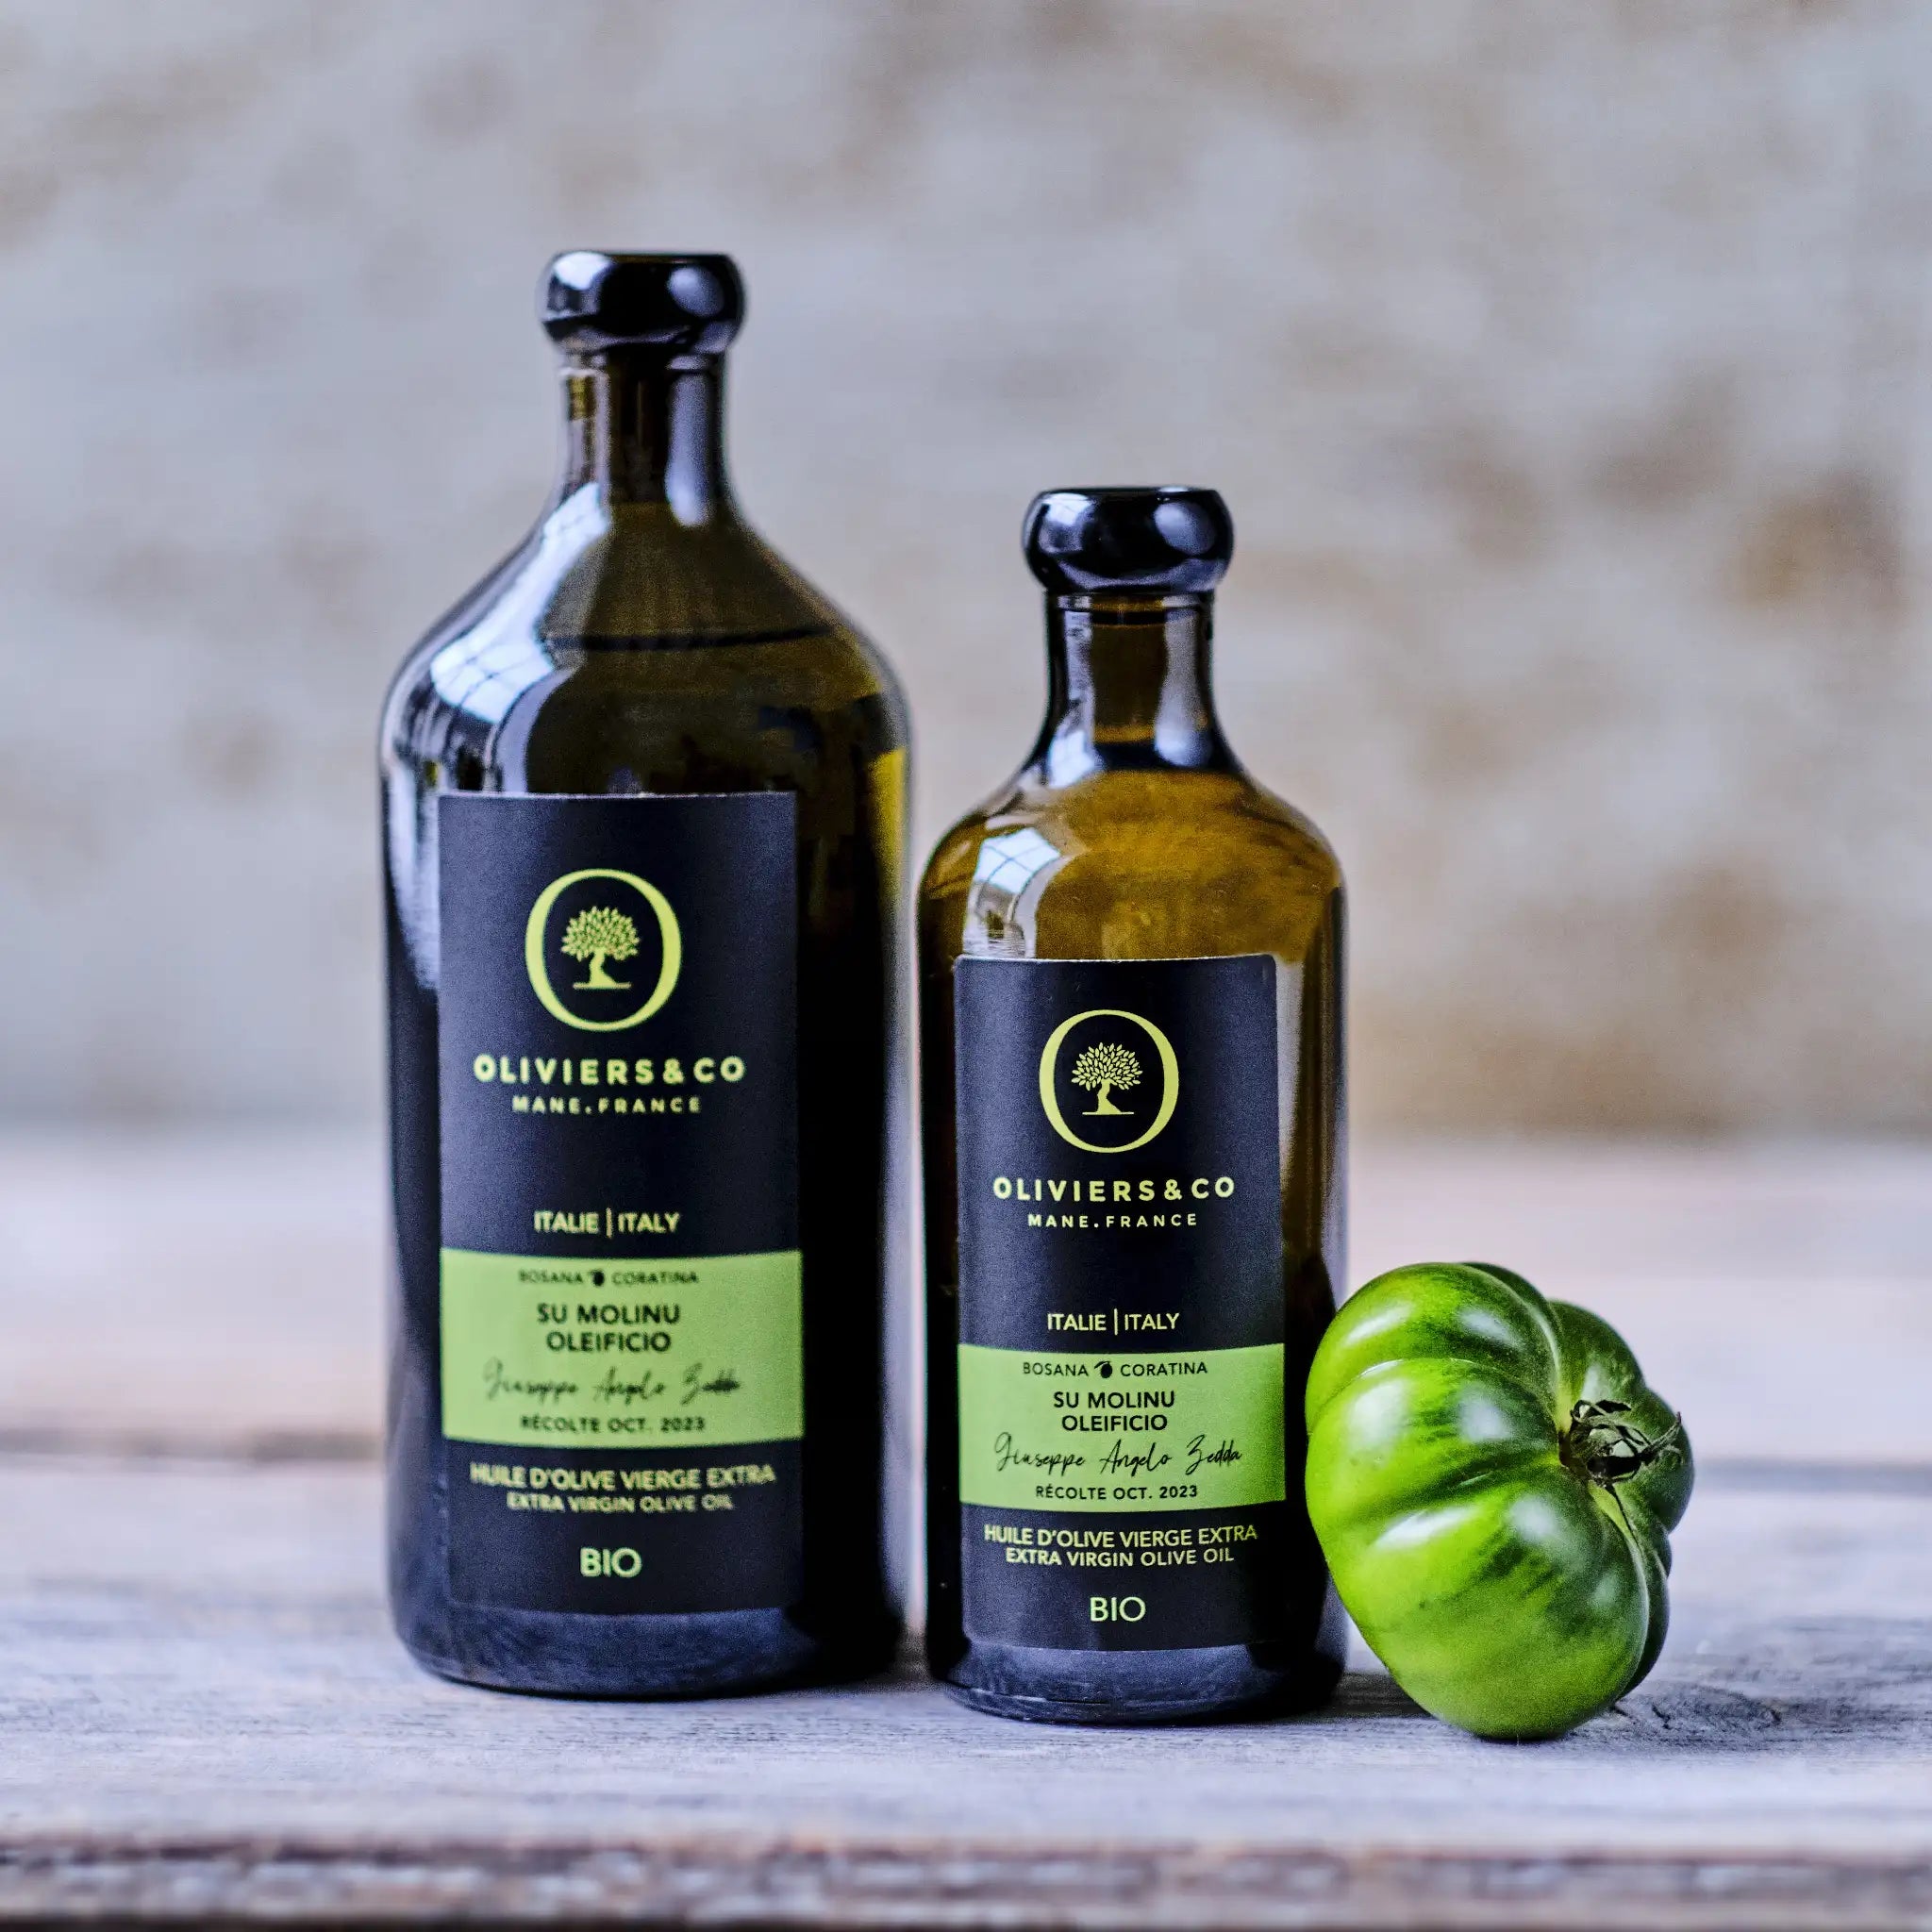 Økologisk ekstra jomfru olivenolie fra Sardinien, Su Molinu Oleificio, Oliviers & Co